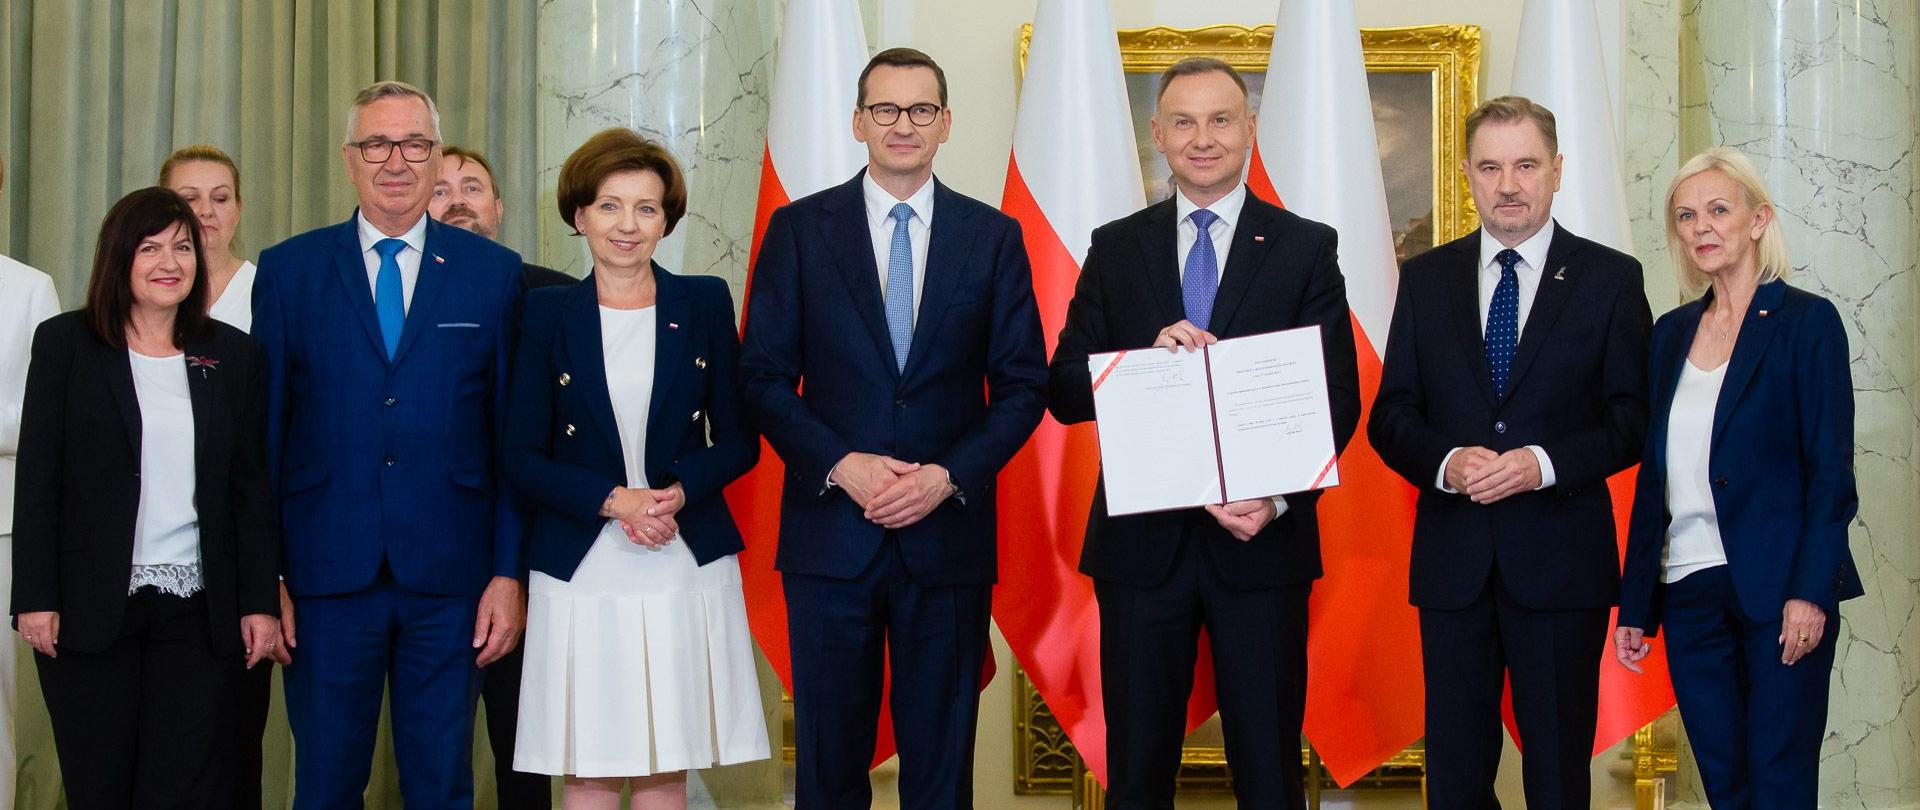 Premier Mateusz Morawiecki podczas uroczystości podpisania przez prezydenta ustawy o emeryturach pomostowych.